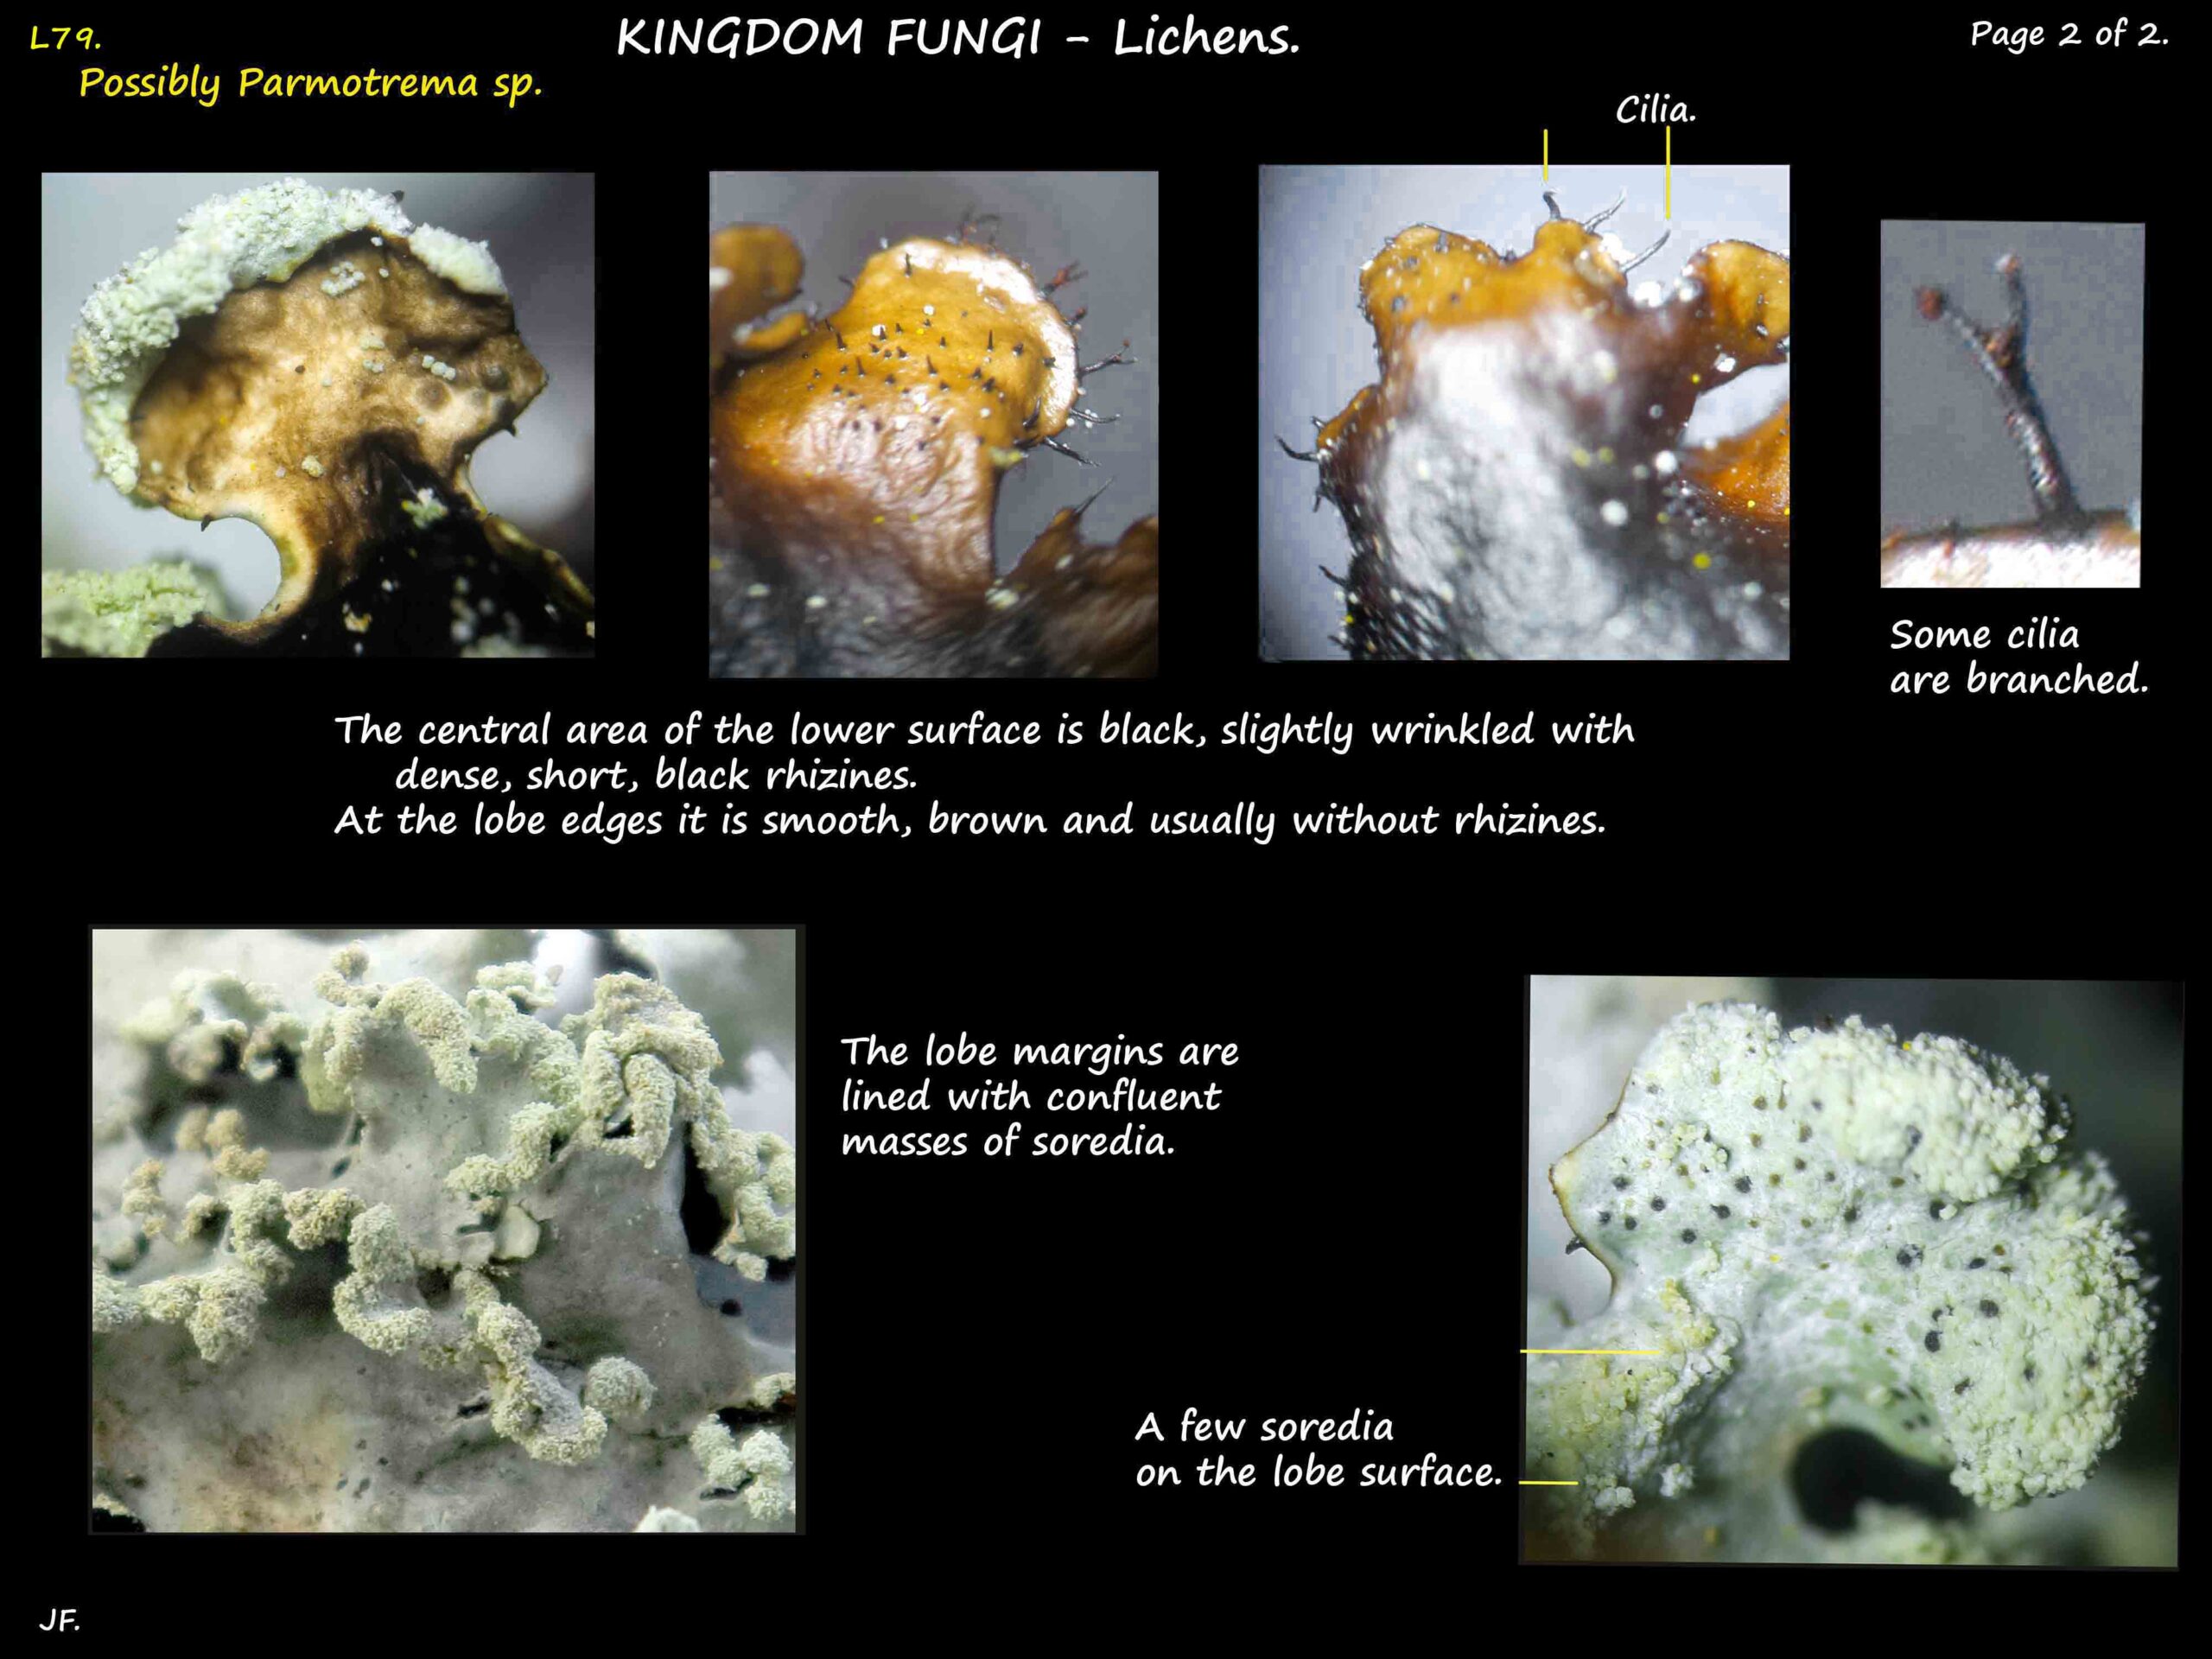 3b Cilia, rhizines & soredia of a possible Parmotrema lichen